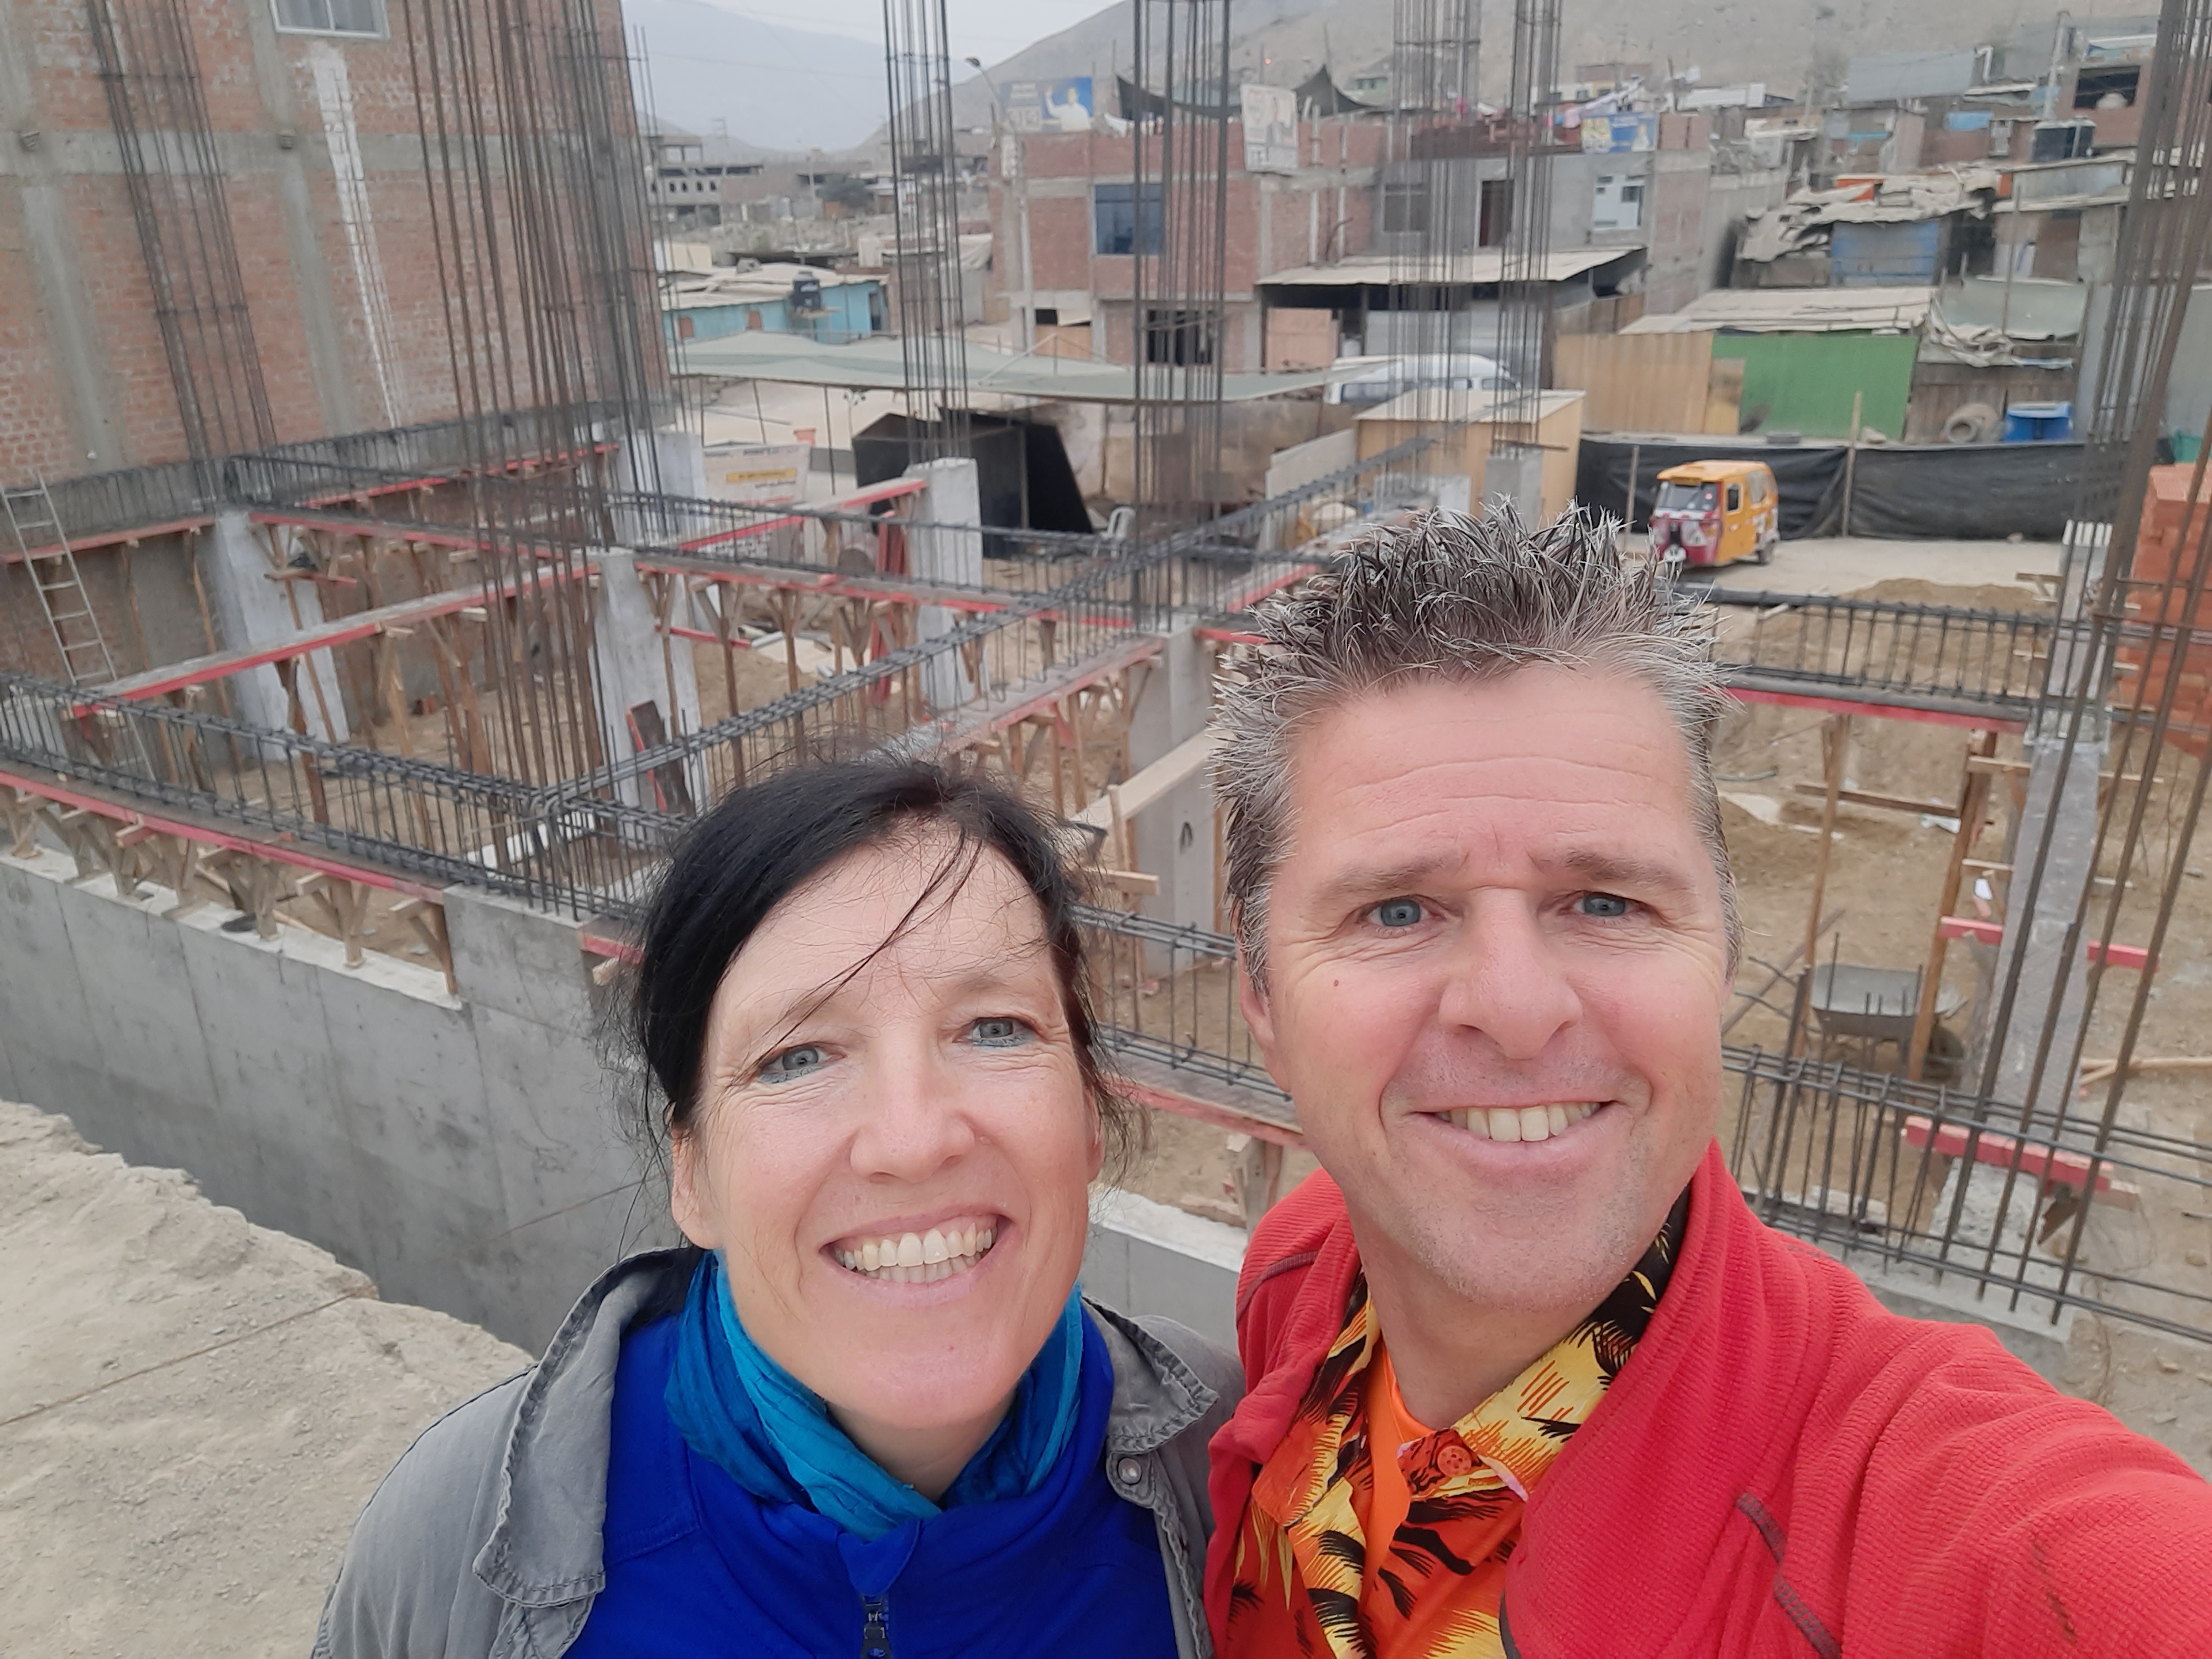 Nieuwsbouwfase 2 in sloppenwijk Lima, Peru